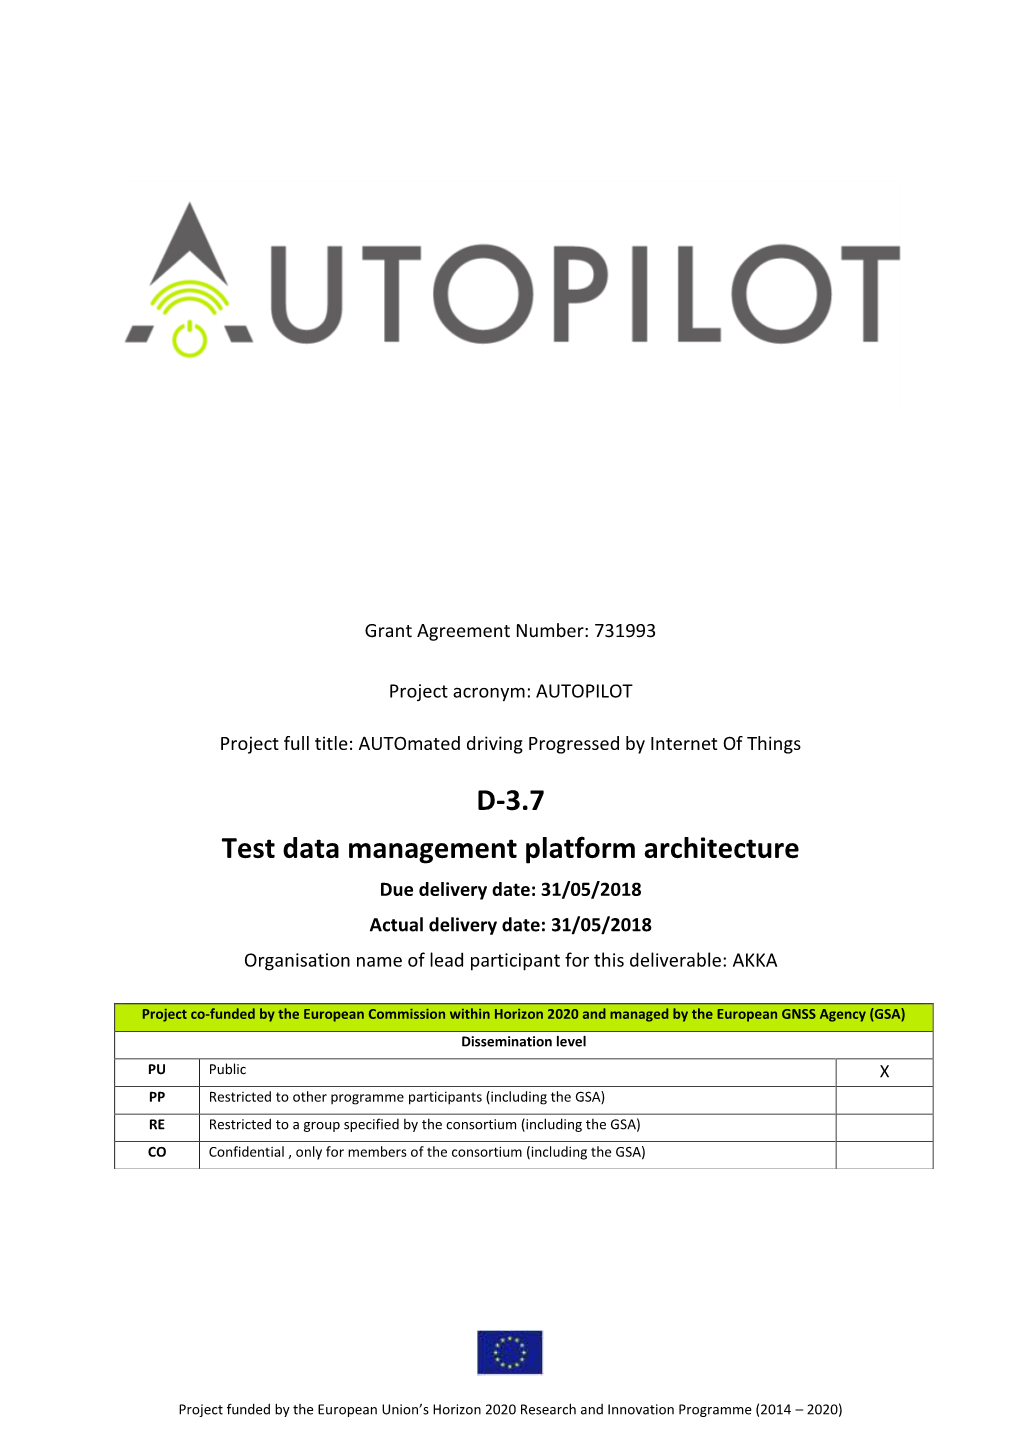 D3.7 Test Data Management Platform Architecture